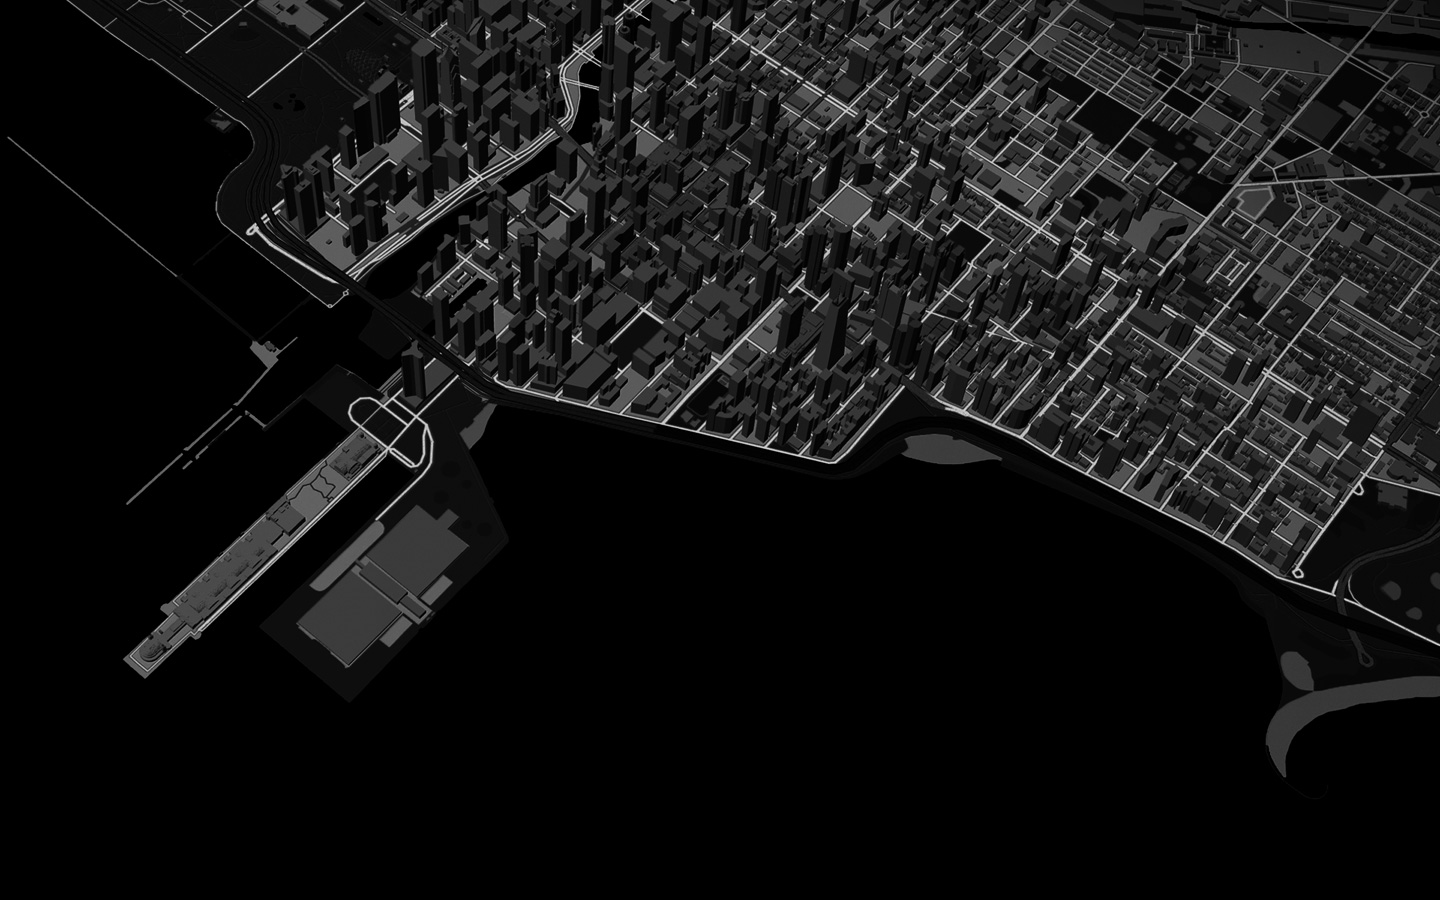 Animación de una línea que representa la ruta de una persona corriendo por una ciudad, en la visualización de Mapas en 3D